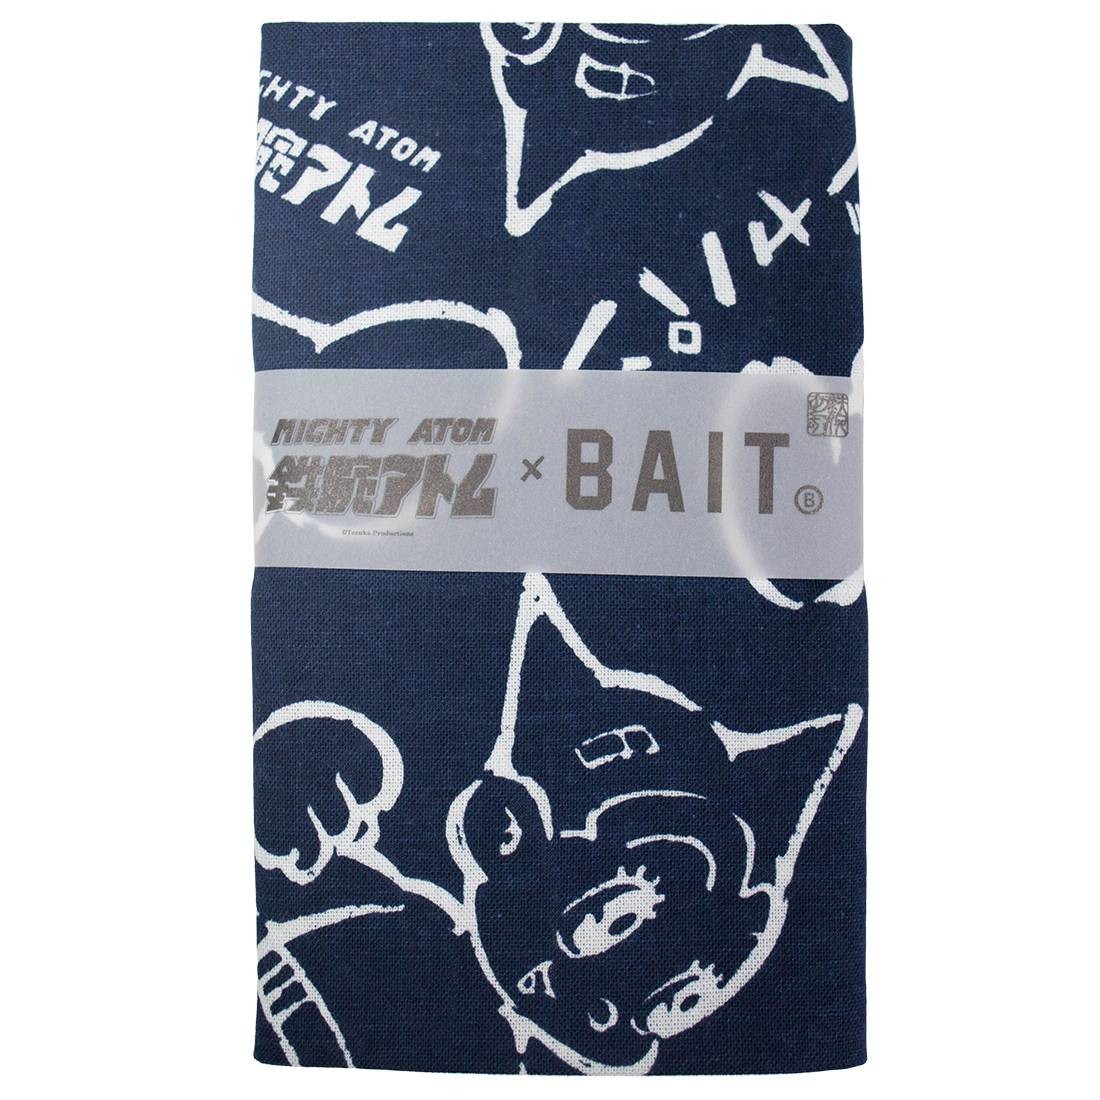 BAIT x Astro Boy Mighty Atom Tenugui Towel (navy)